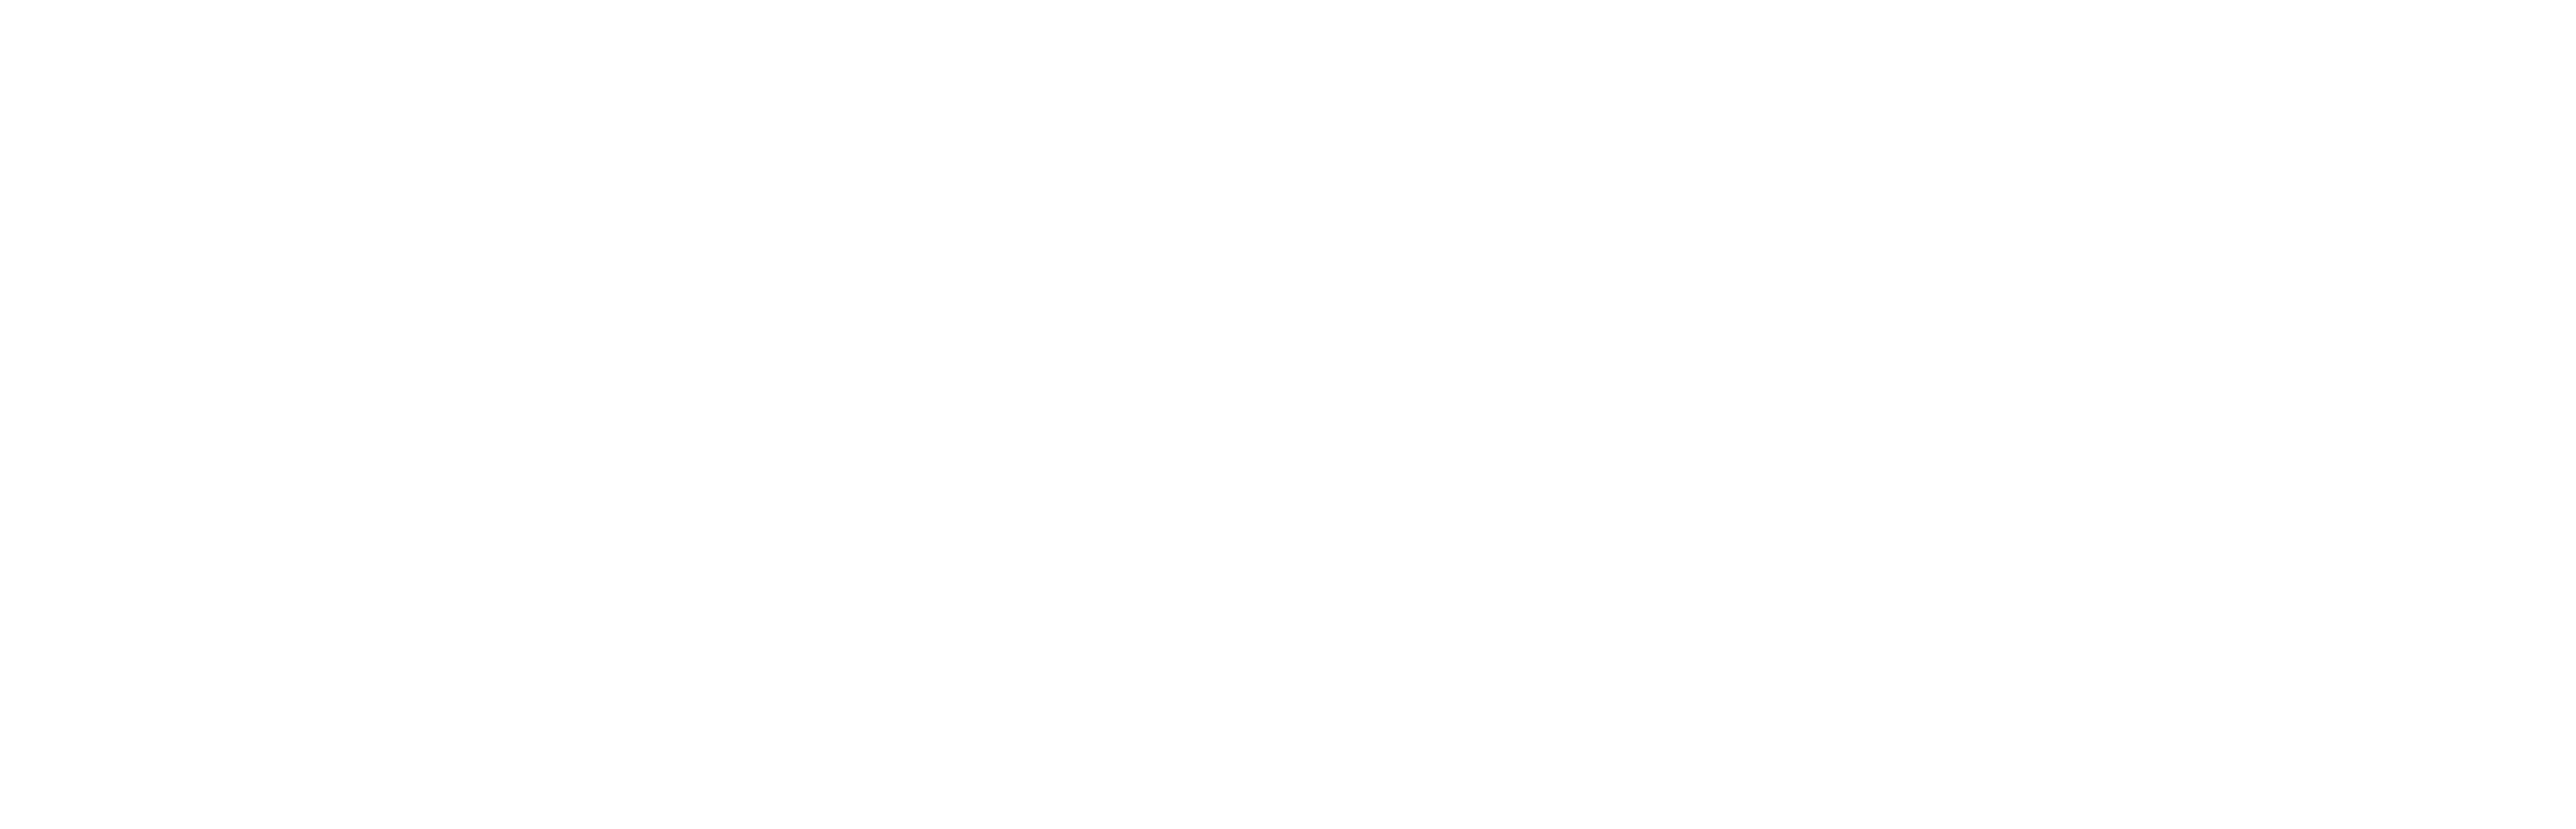 Bethel.info